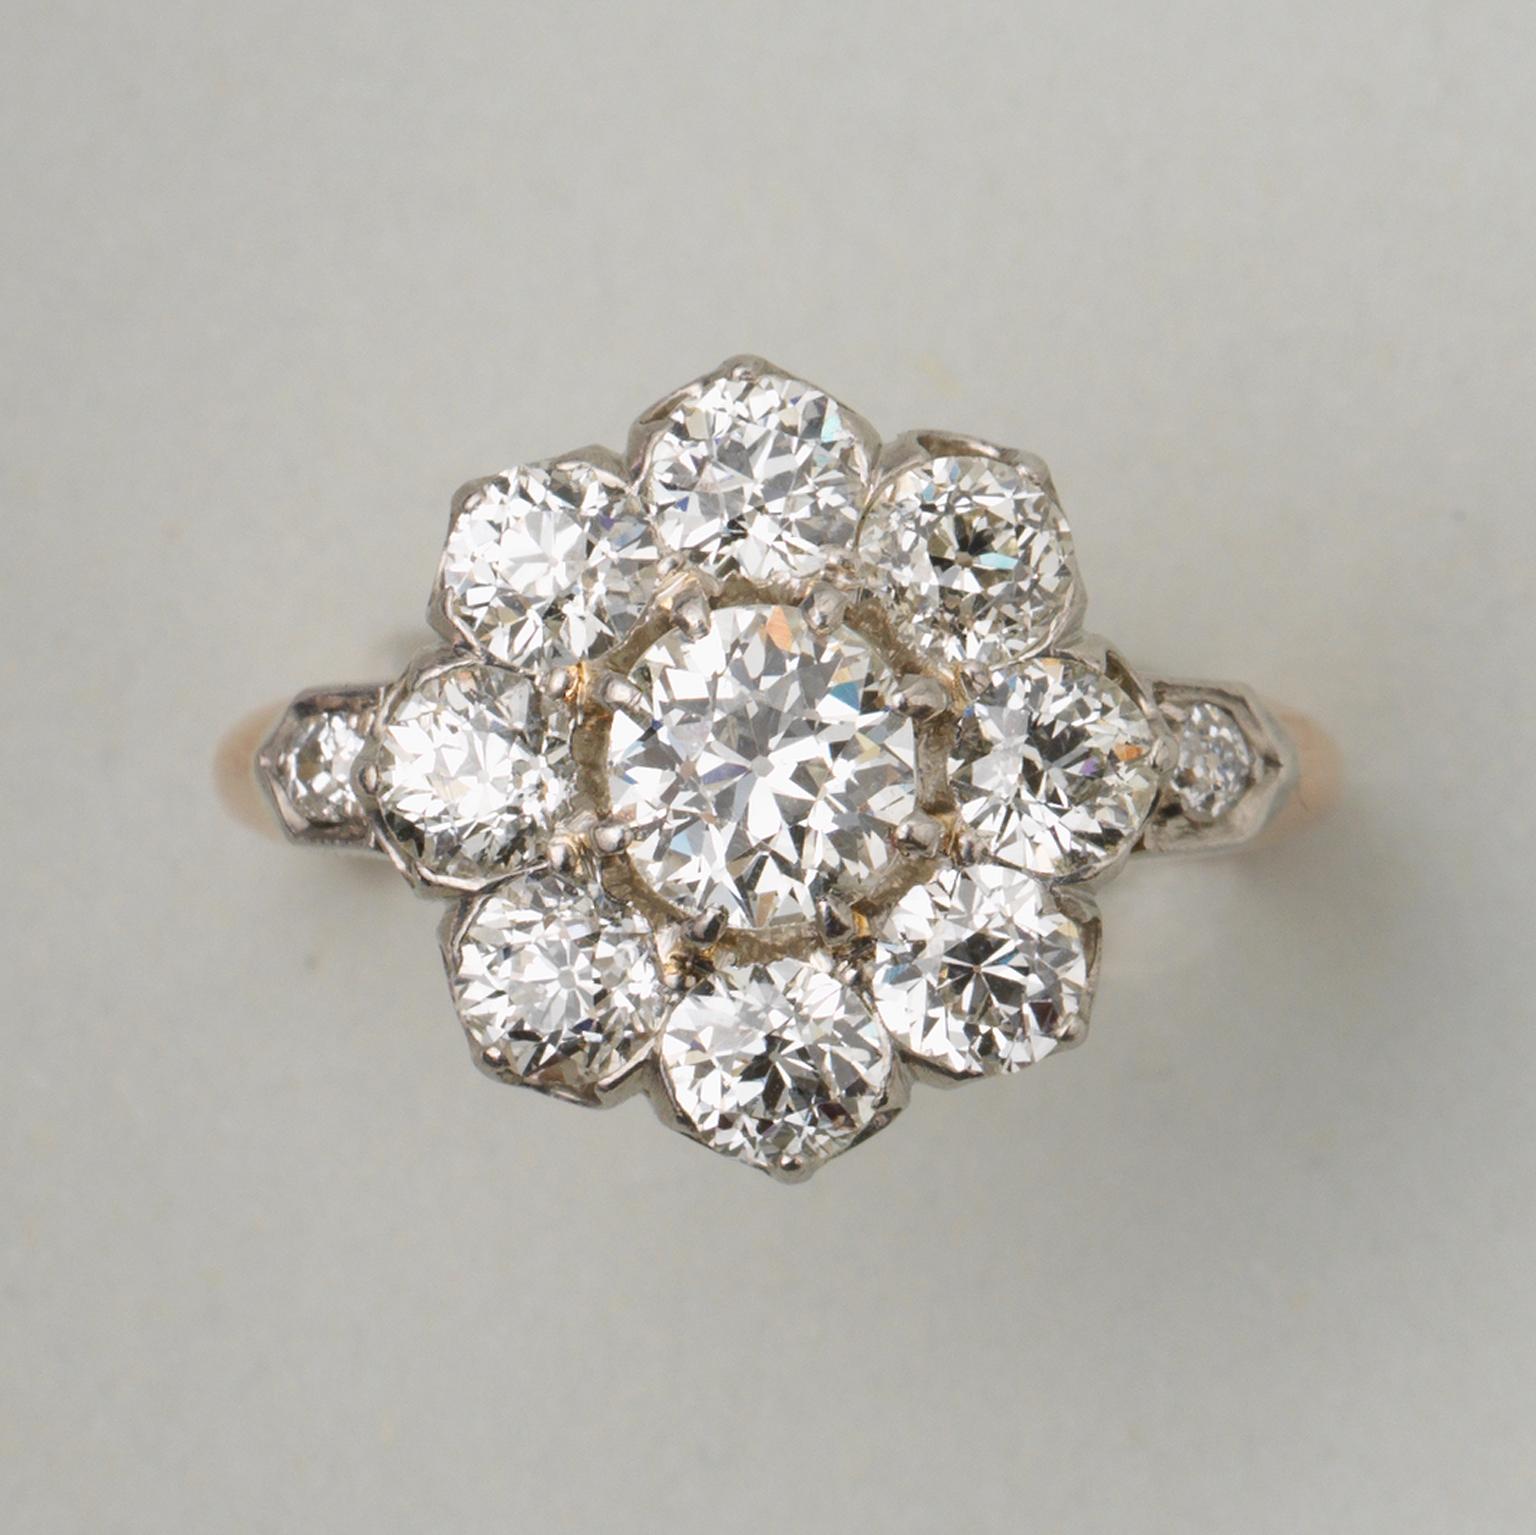 Ein Ring aus 18 Karat Gold und Platin, besetzt mit Diamanten im Altschliff (ca. 2,75 Karat, I-J, VVS). Frankreich, um 1910.

Gewicht: 7,27 Gramm
Ringgröße: 18,5 mm / 8,5 US